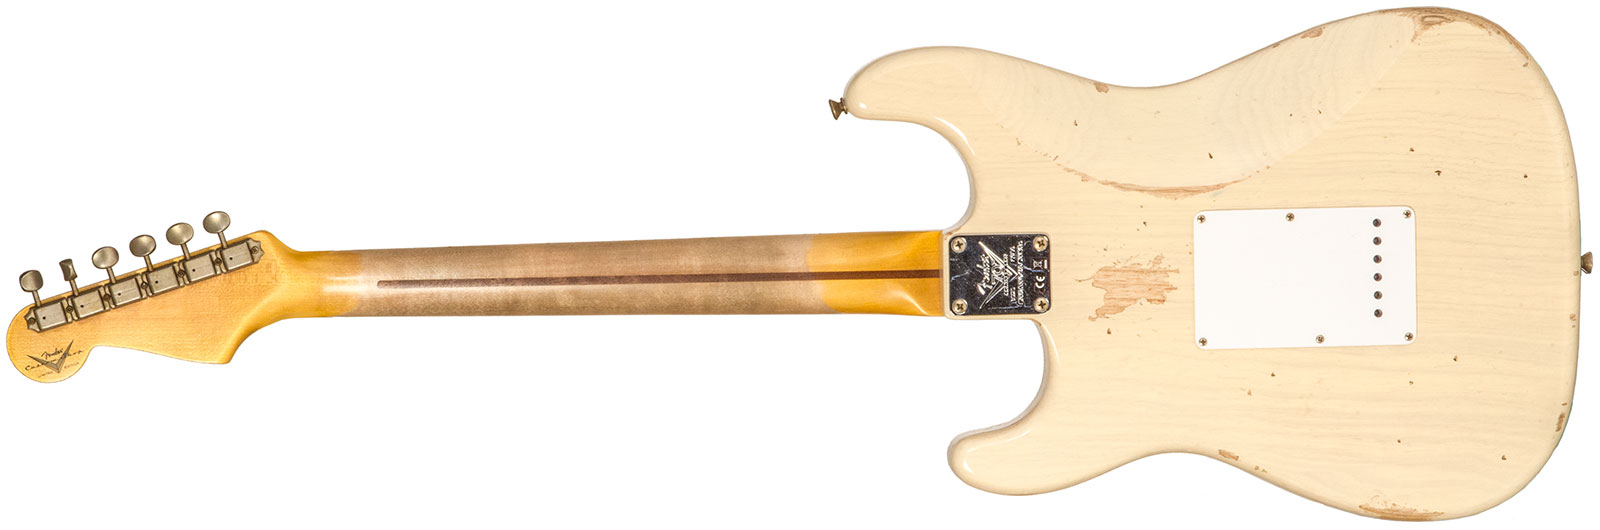 Fender Custom Shop Strat 1954 70th Anniv. 3s Trem Mn #xn4342 - Relic Vintage Blonde - Elektrische gitaar in Str-vorm - Variation 1